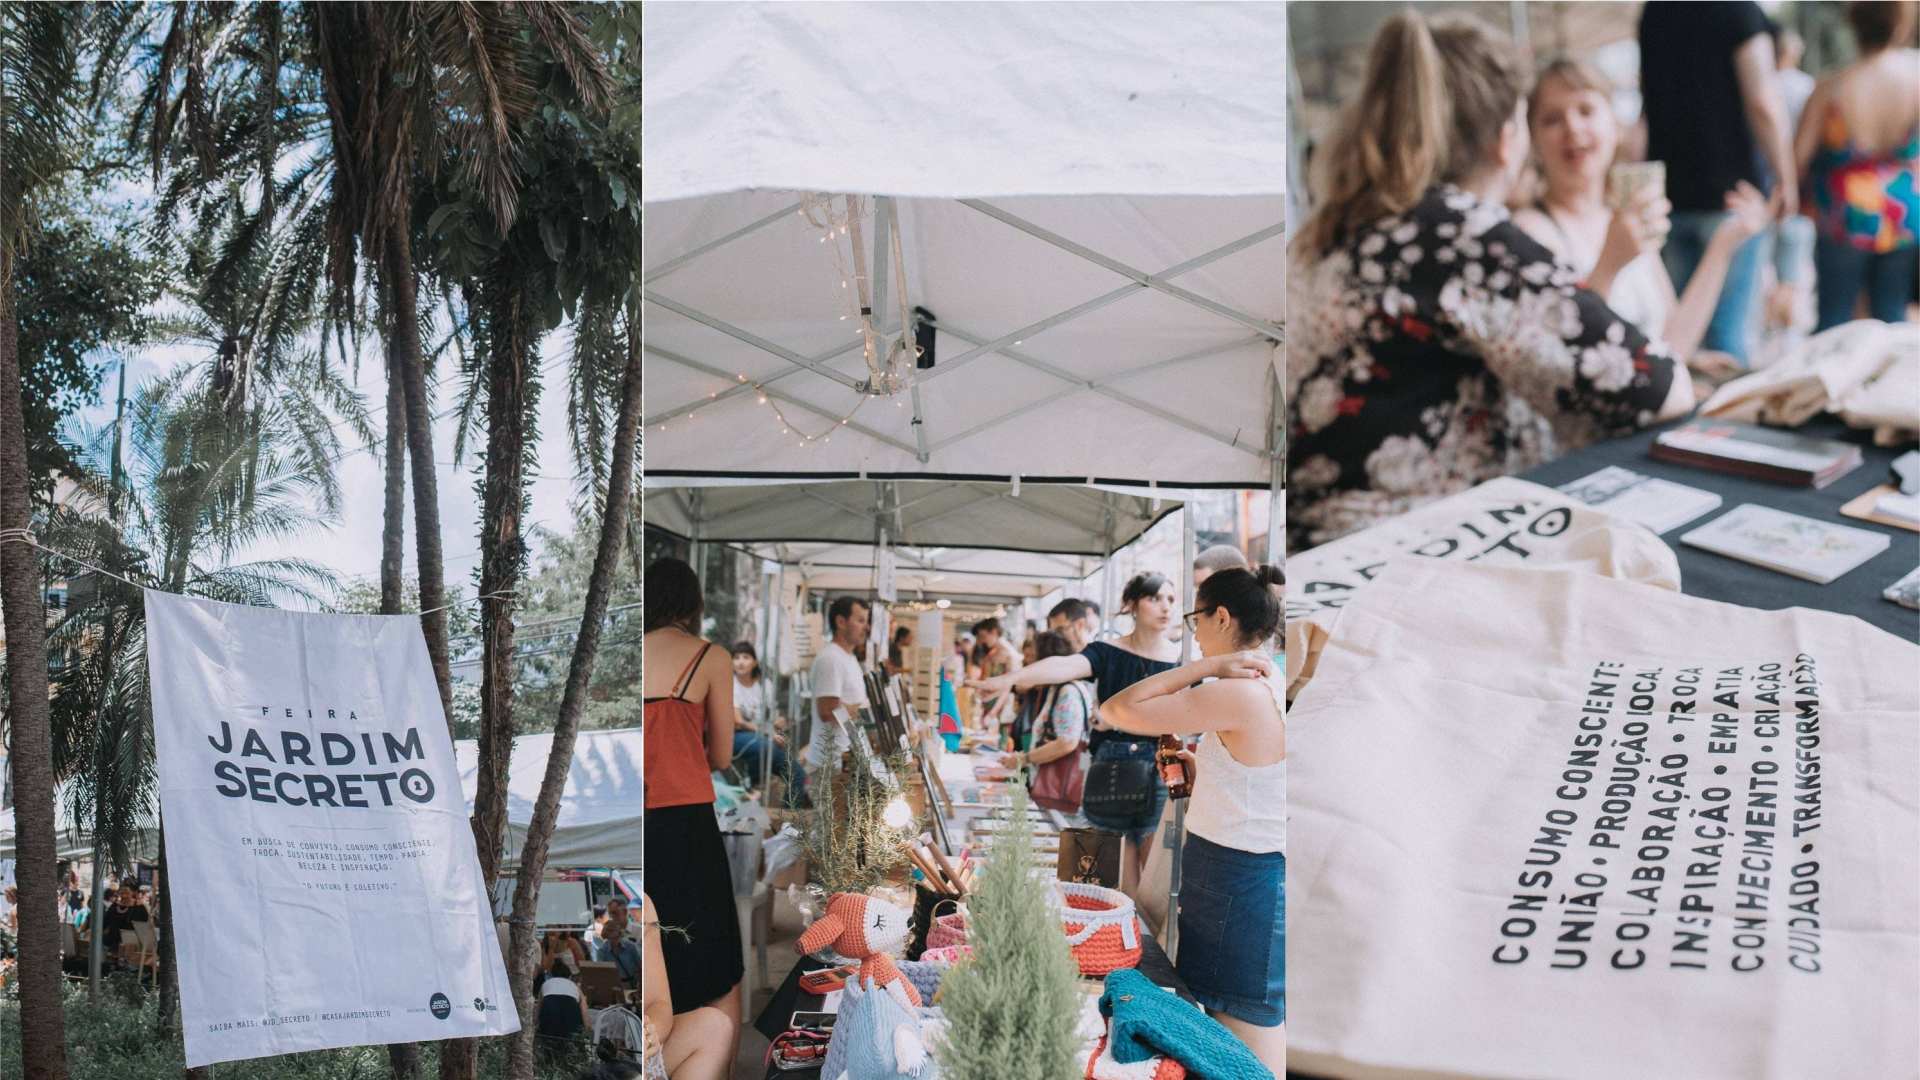 Claudia Kievel e Gladys Tchoport criaram a Feira Jardim Secreto em 2013 como um evento a céu aberto, com muito verde, música e pequenos produtores apaixonados pelo fazer manual